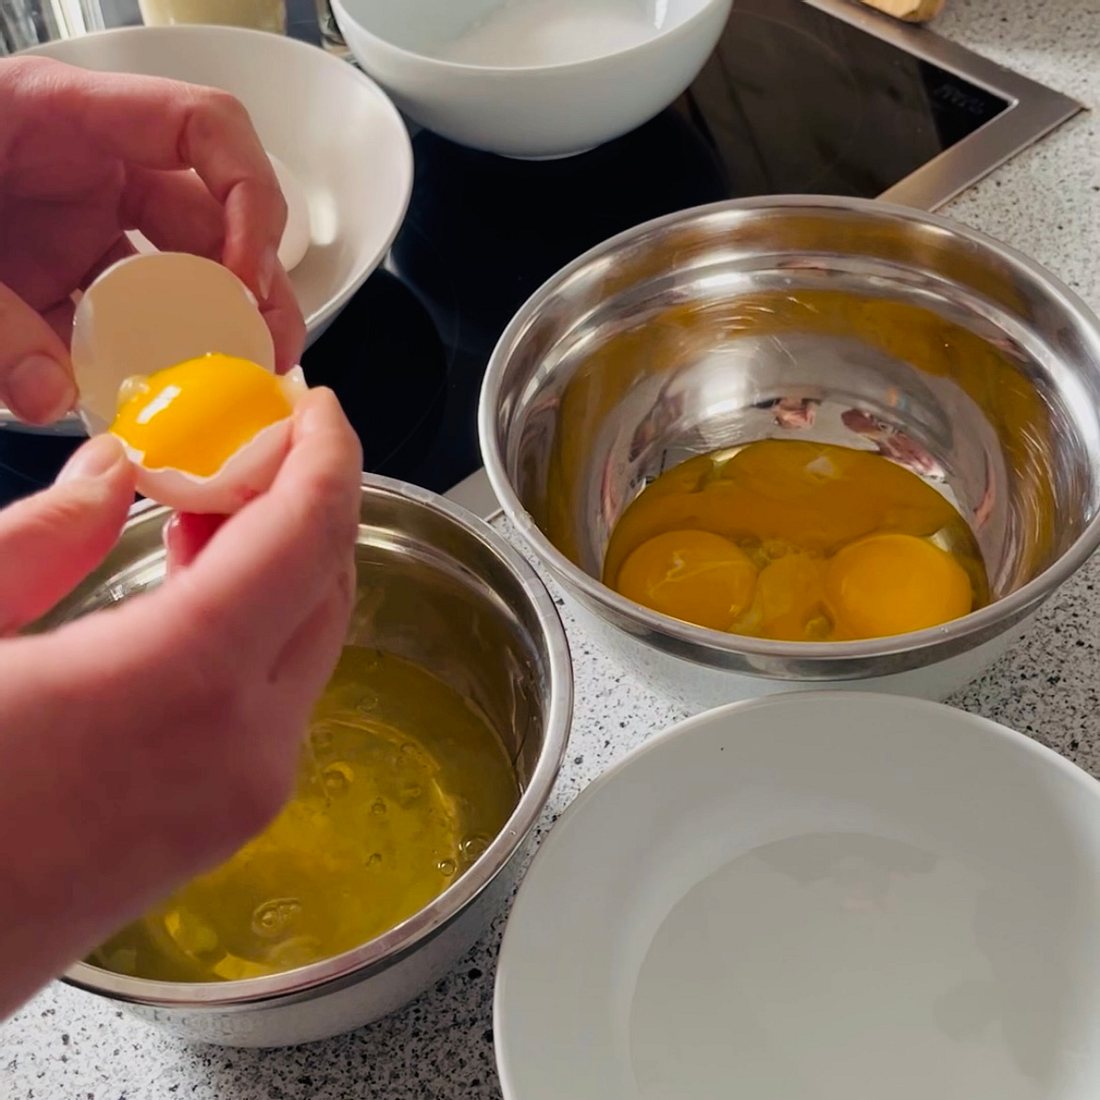 Schritt 1: Eier in eine Schüssel geben und Eigelb vom Eiweiß trennen.